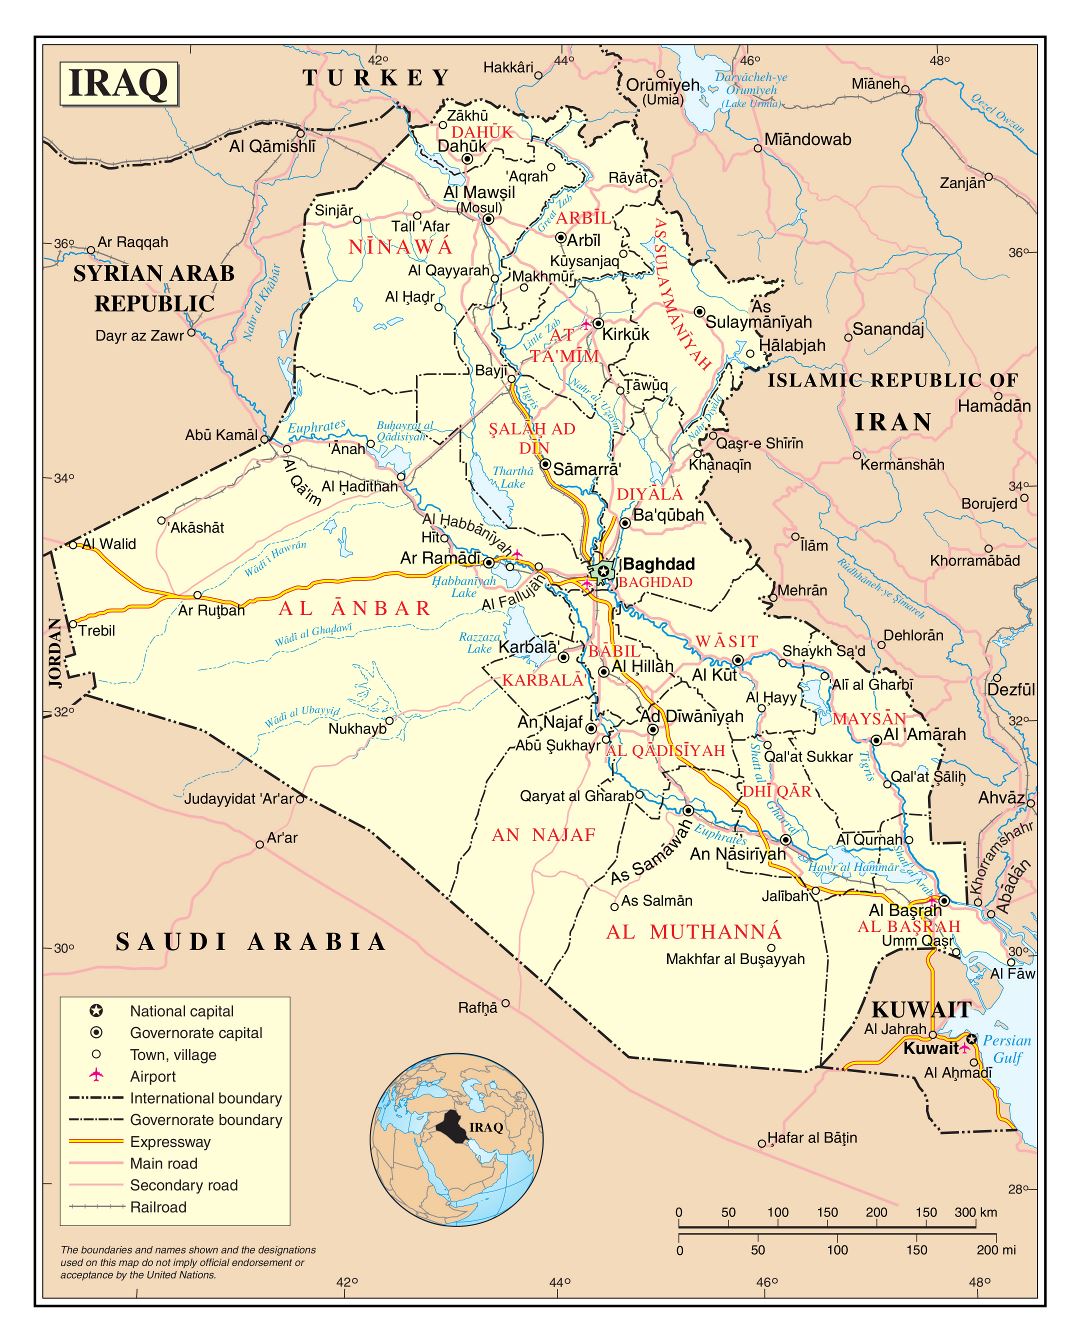 Grande detallado mapa político y administrativo de Iraq con carreteras, ciudades y aeropuertos